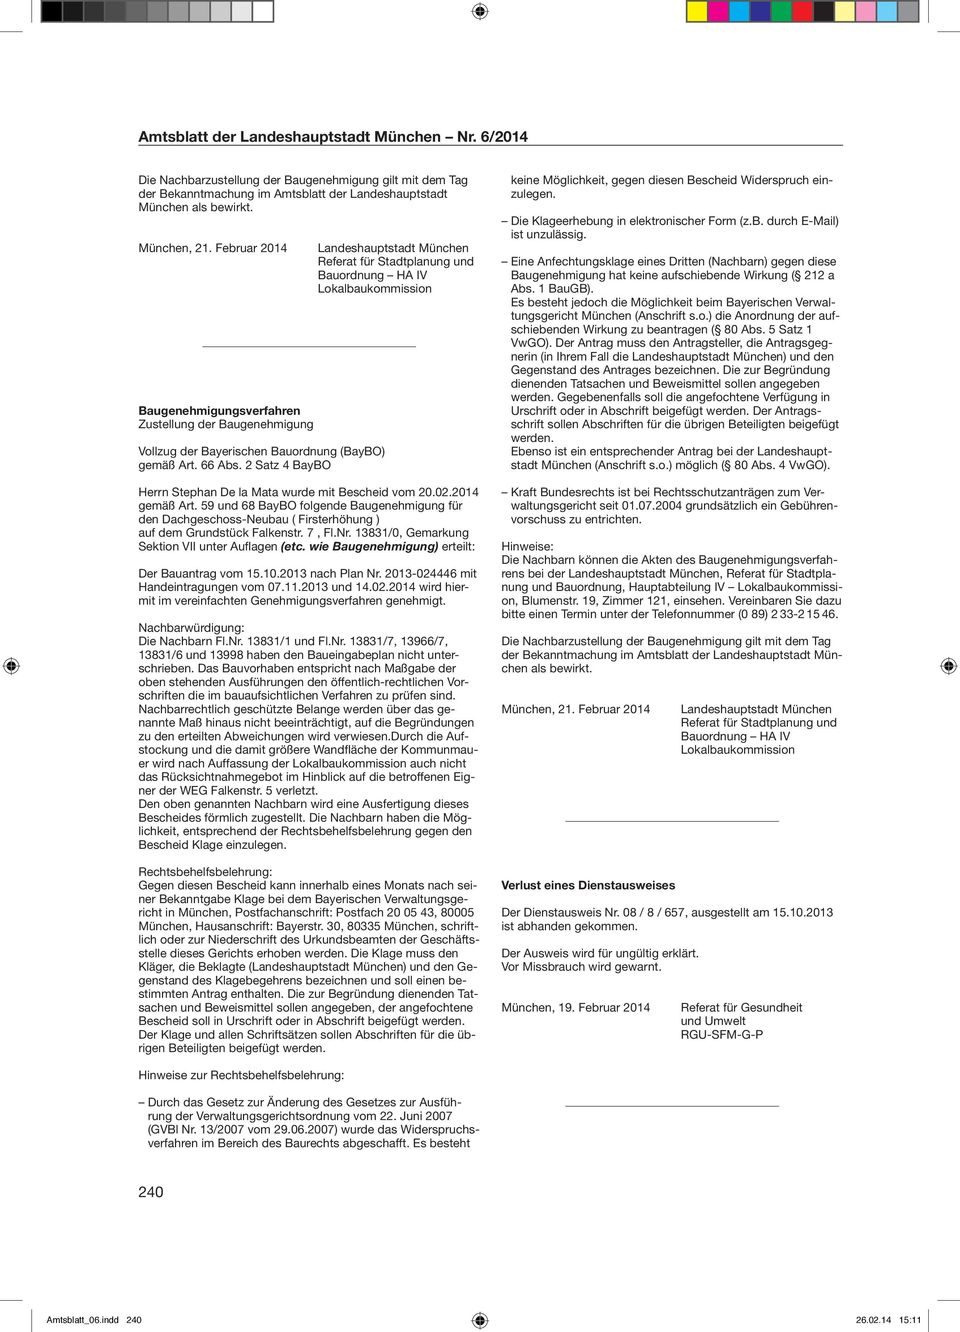 2 Satz 4 BayBO Landeshauptstadt München Referat für Stadtplanung und Bauordnung HA IV Lokalbaukommission Herrn Stephan De la Mata wurde mit Bescheid vom 20.02.2014 gemäß Art.